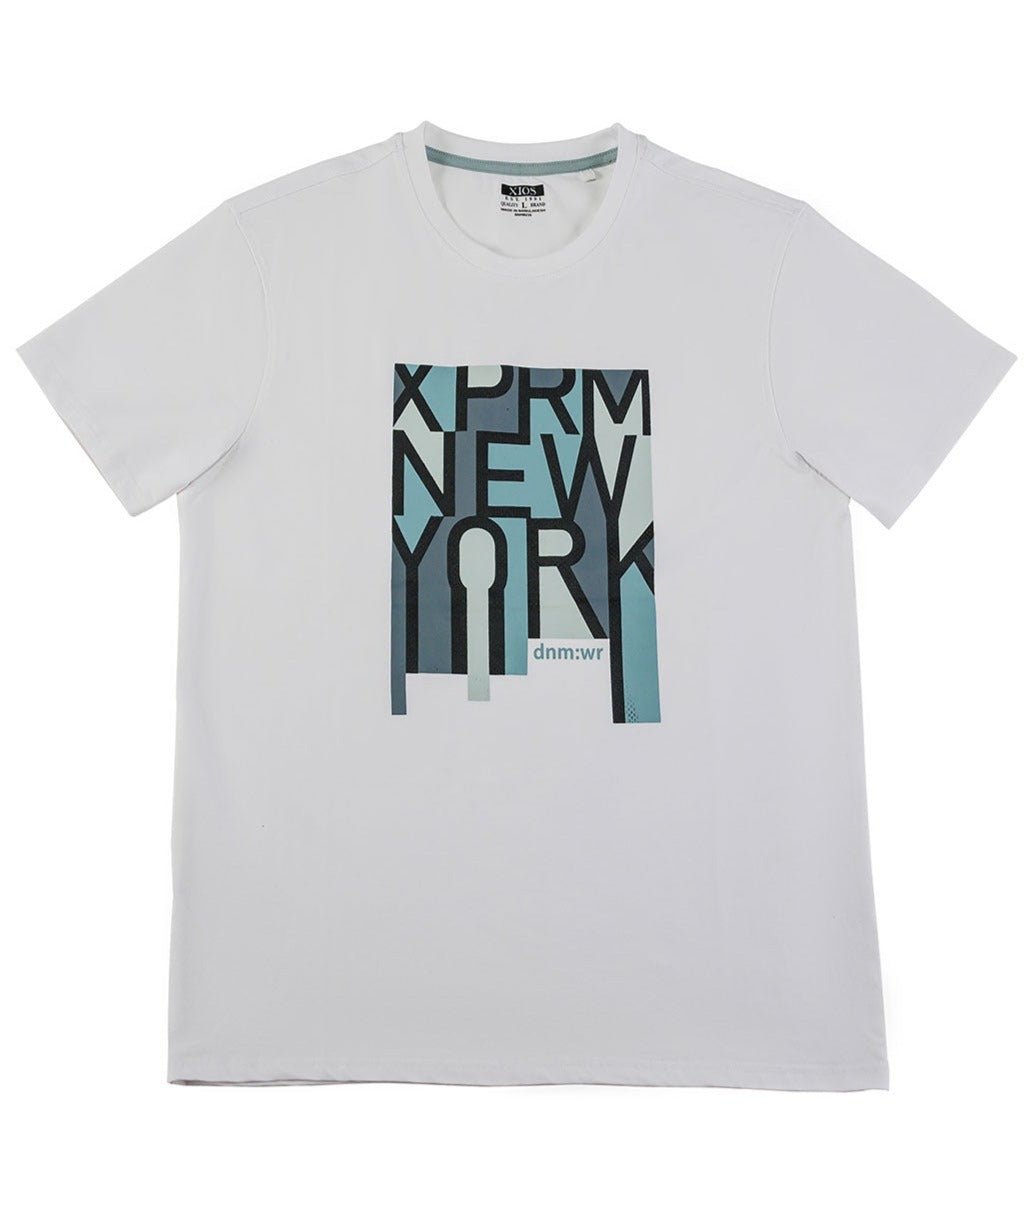 Camiseta con gráfico "XPRM Nueva York"